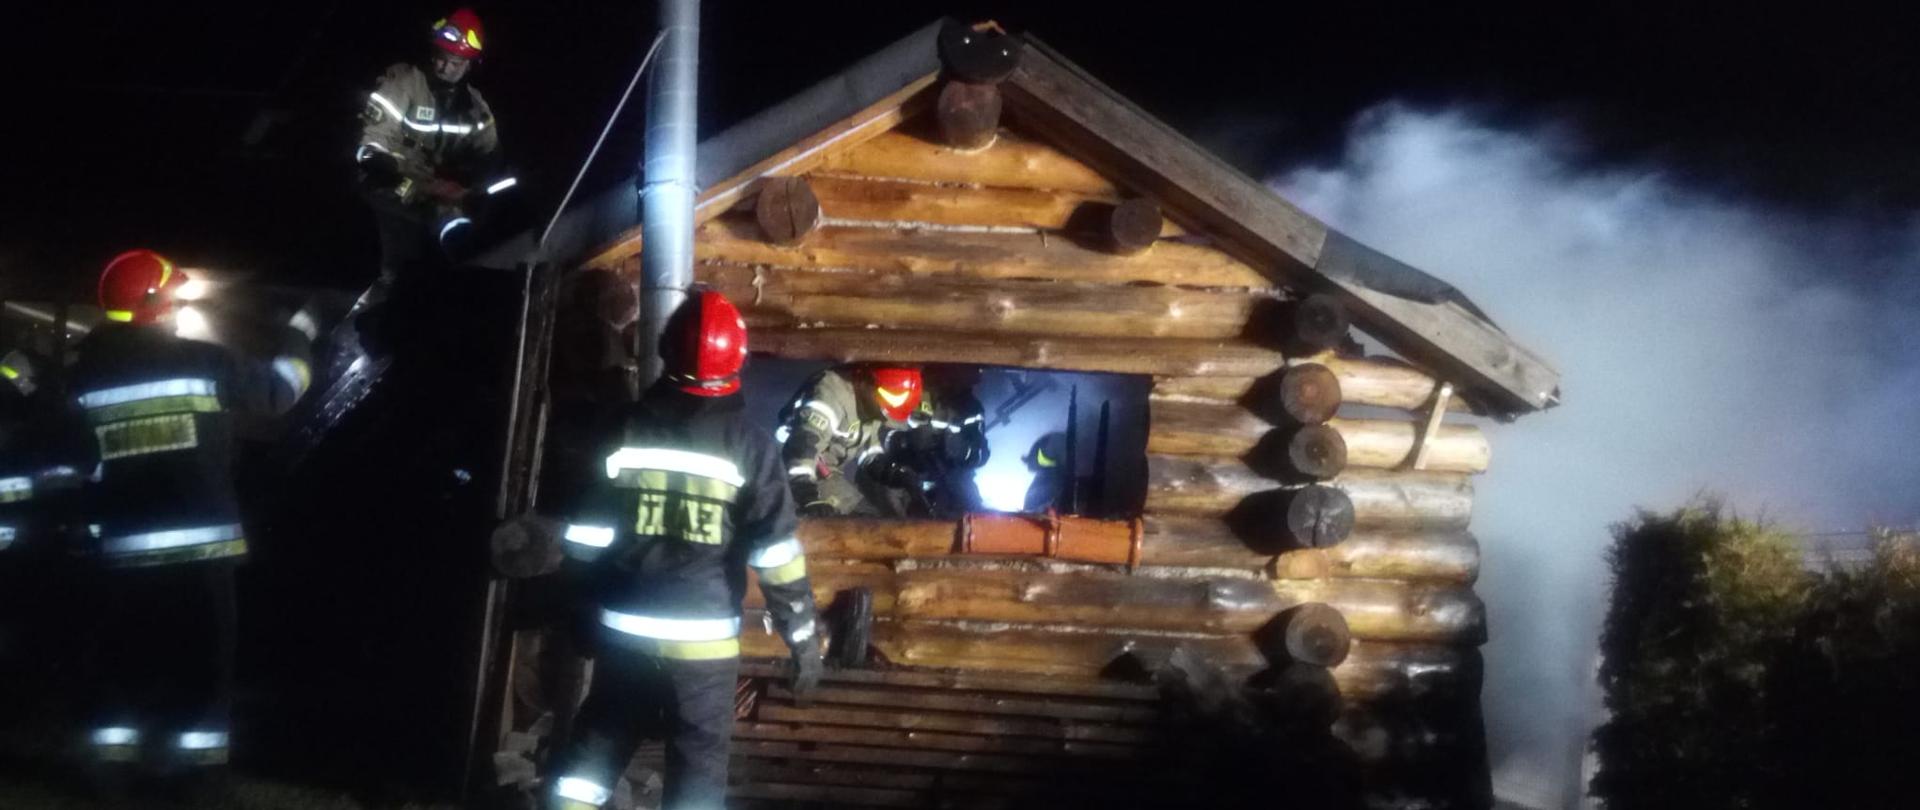 Zdjęcie wykonane w porze nocnej obrazuje budynek gospodarczy o konstrukcji drewnianej z widoczną spaloną częścią dachu. Widoczni strażacy usuwają spalone i nadpalone elementy konstrukcyjne obiektu i wyposażenia.